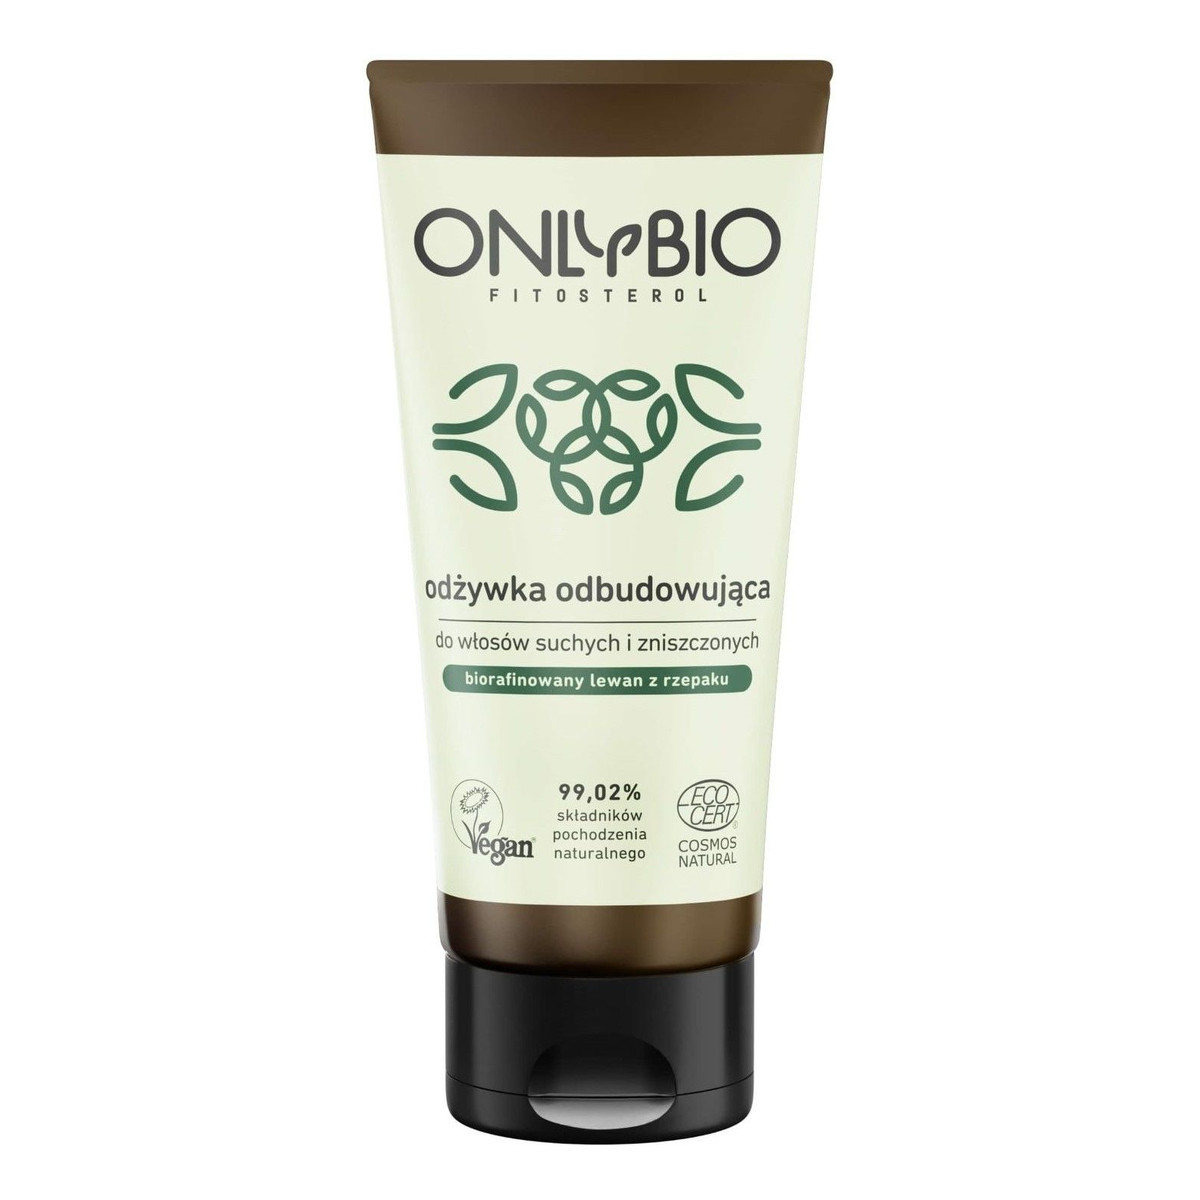 OnlyBio Fitosterol odżywka odbudowująca do włosów suchych i zniszczonych 200ml